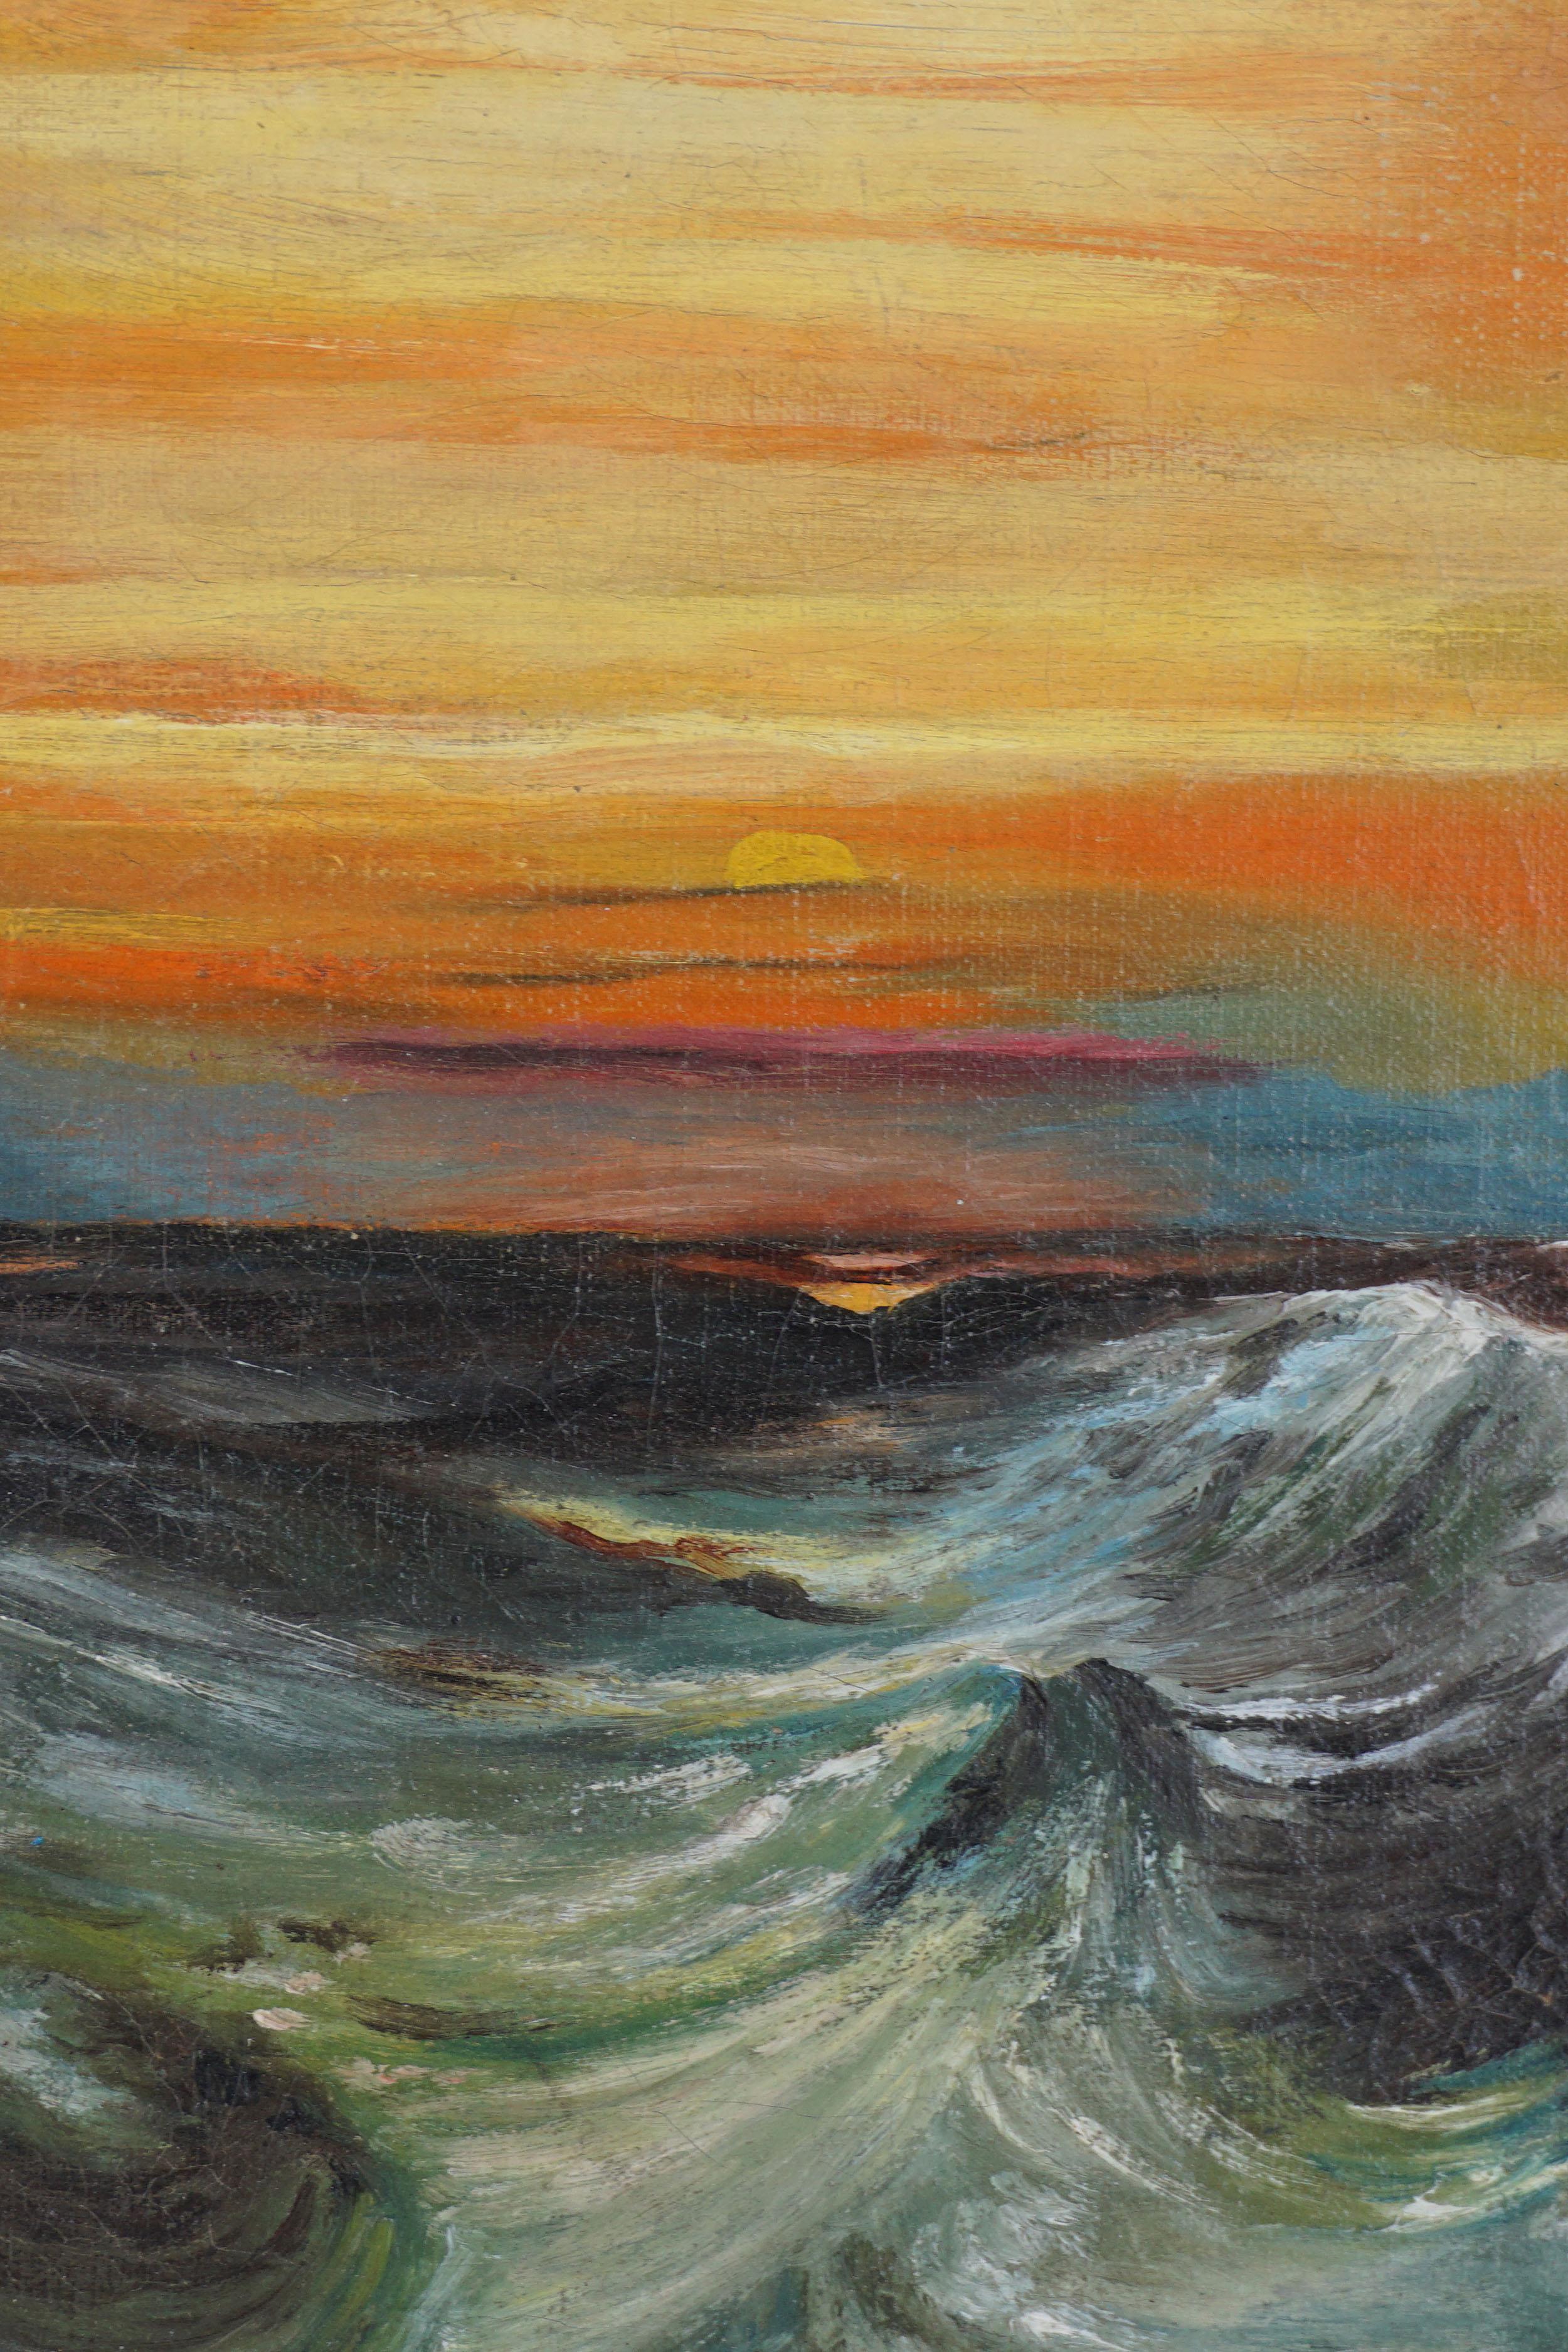 Frühes 20. Jahrhundert Lebendiger Sonnenuntergang Meereslandschaft  – Painting von Unknown